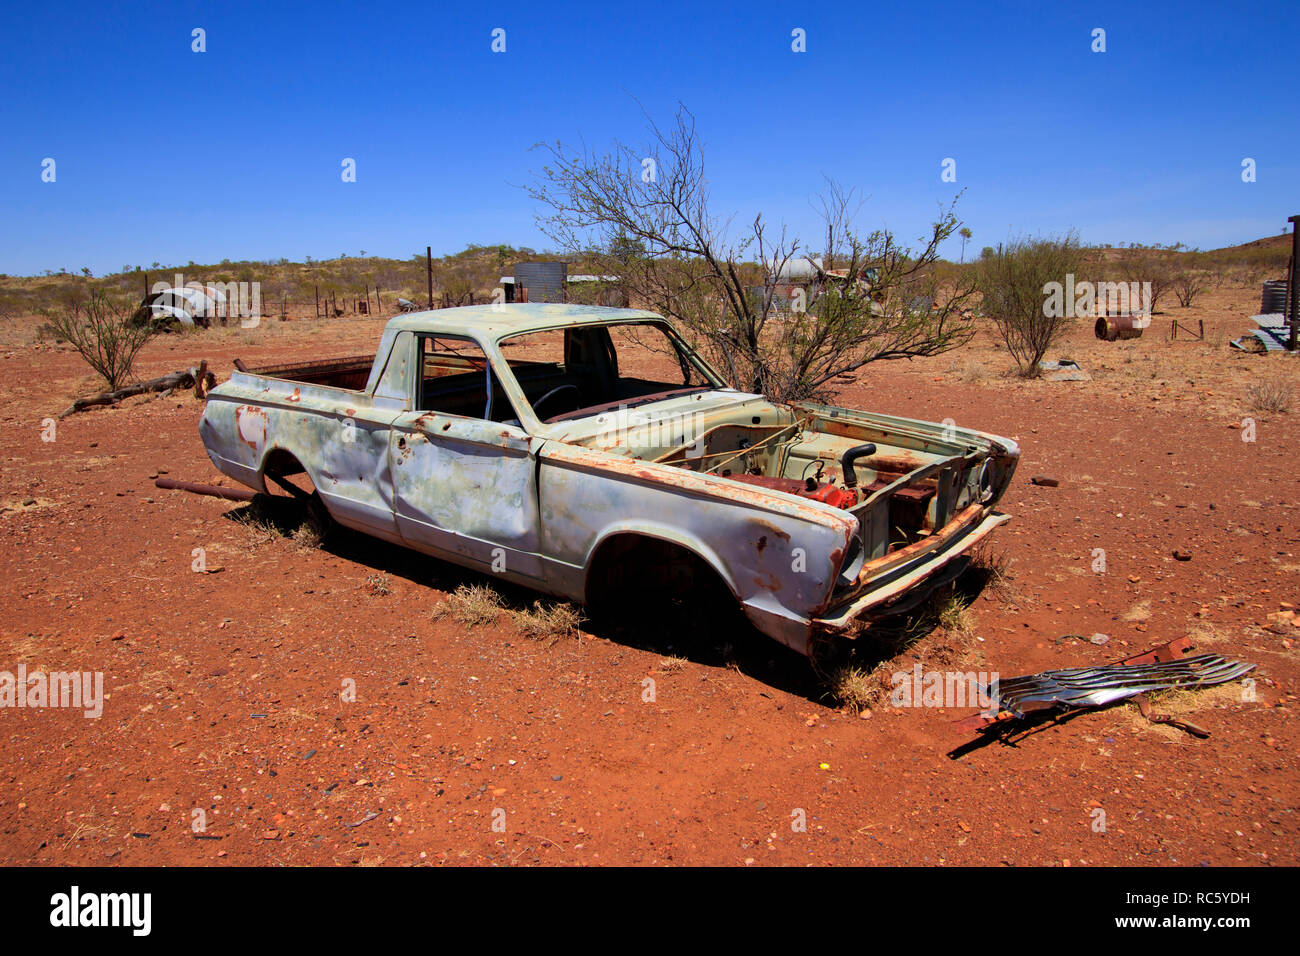 Une vieille camionnette utility se trouve abandonné dans l'outback australien avec ciel bleu et rouge du sol. Banque D'Images